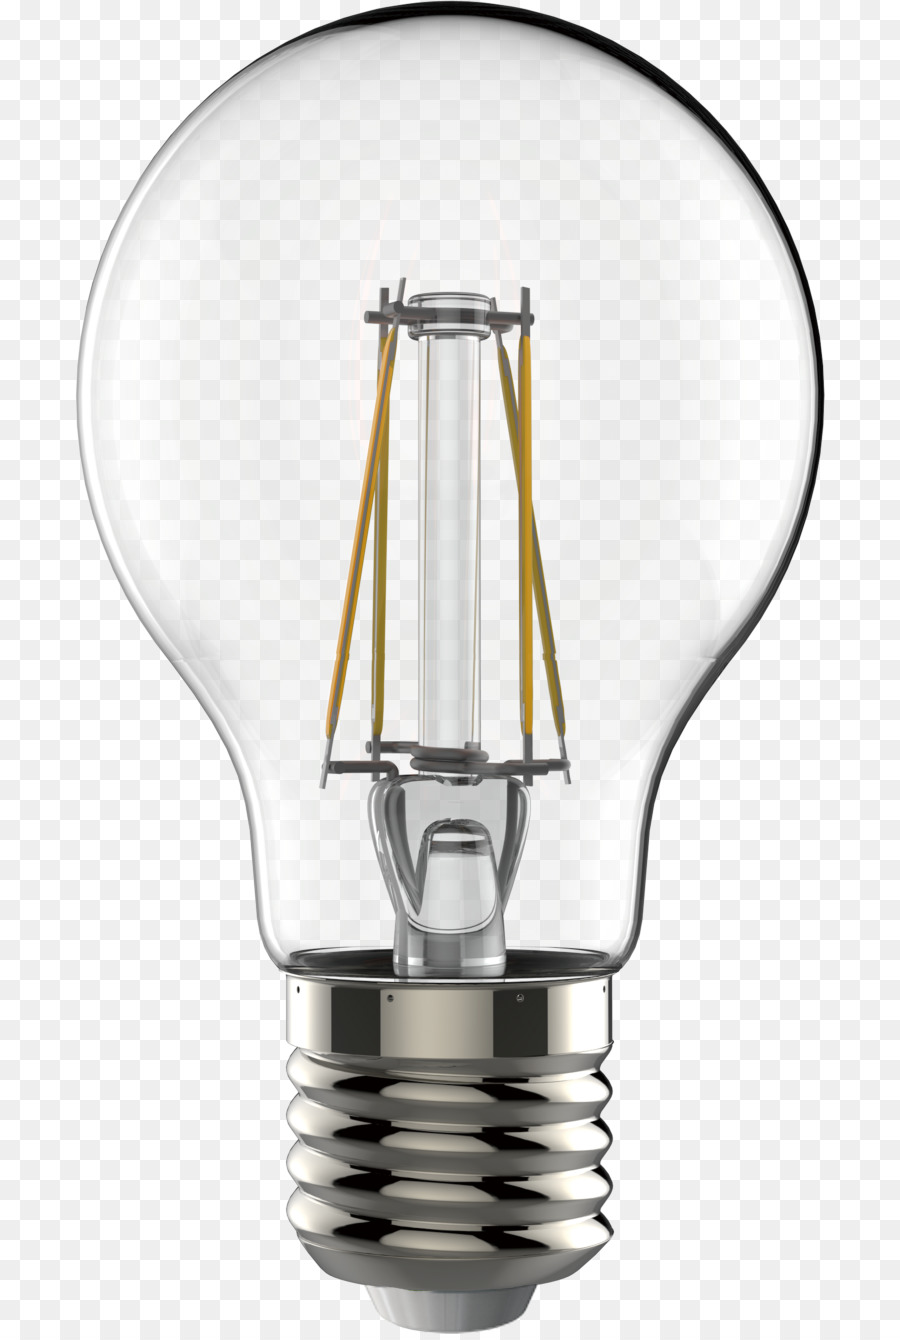 Incandescent light bulb LED lamp Edison screw Light-emitting diode - LED bulb png download - 750*1334 - Free Transparent  Light png Download.